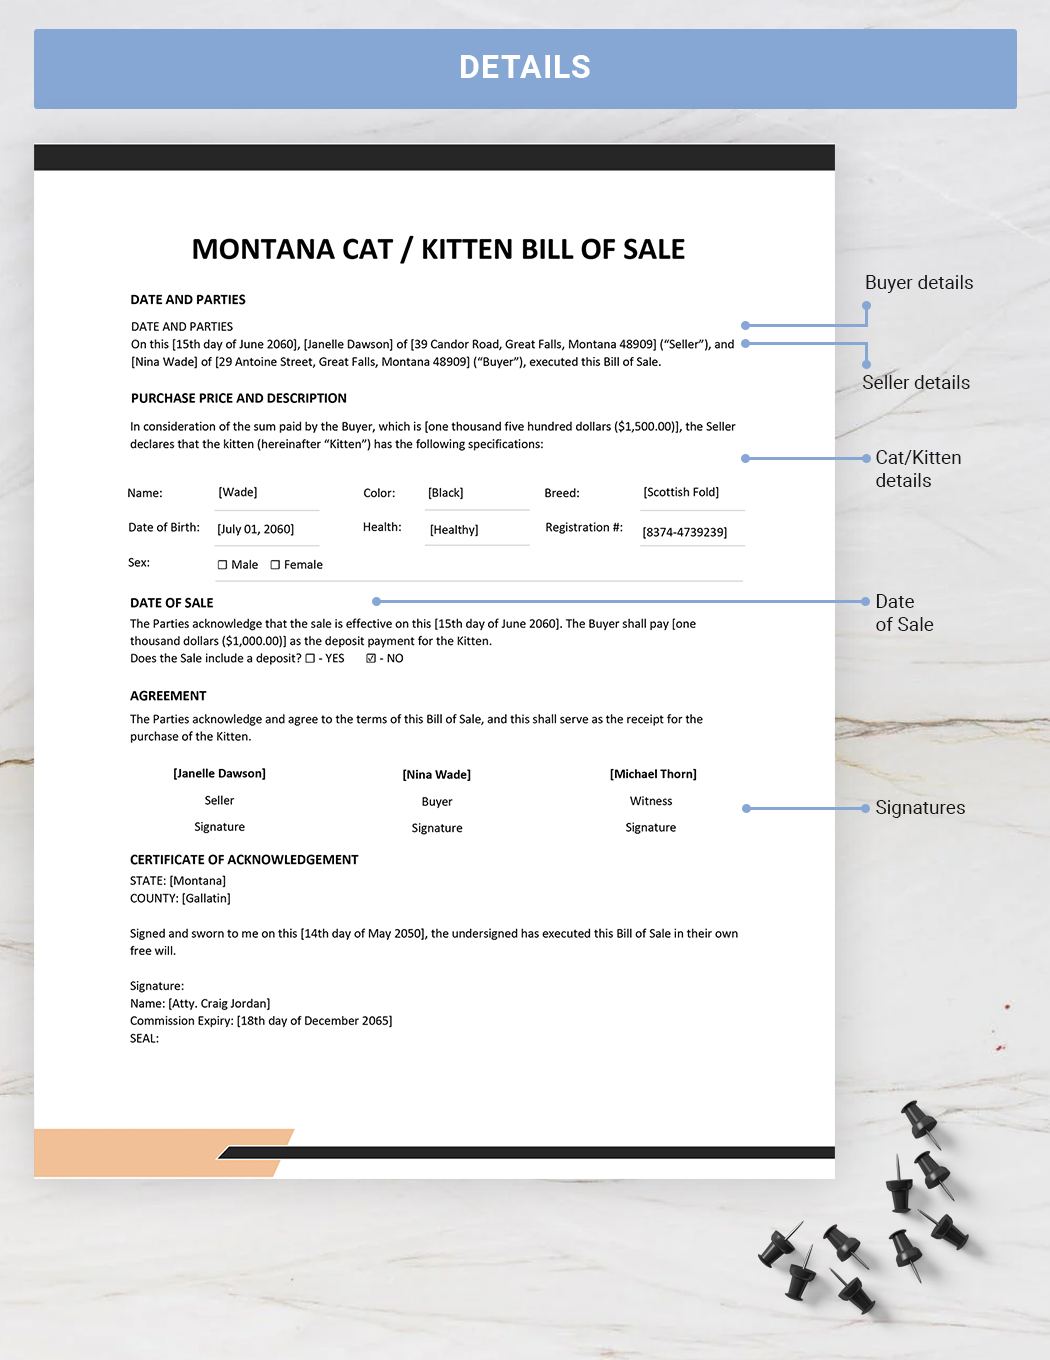 Montana Cat / Kitten Bill of Sale Template